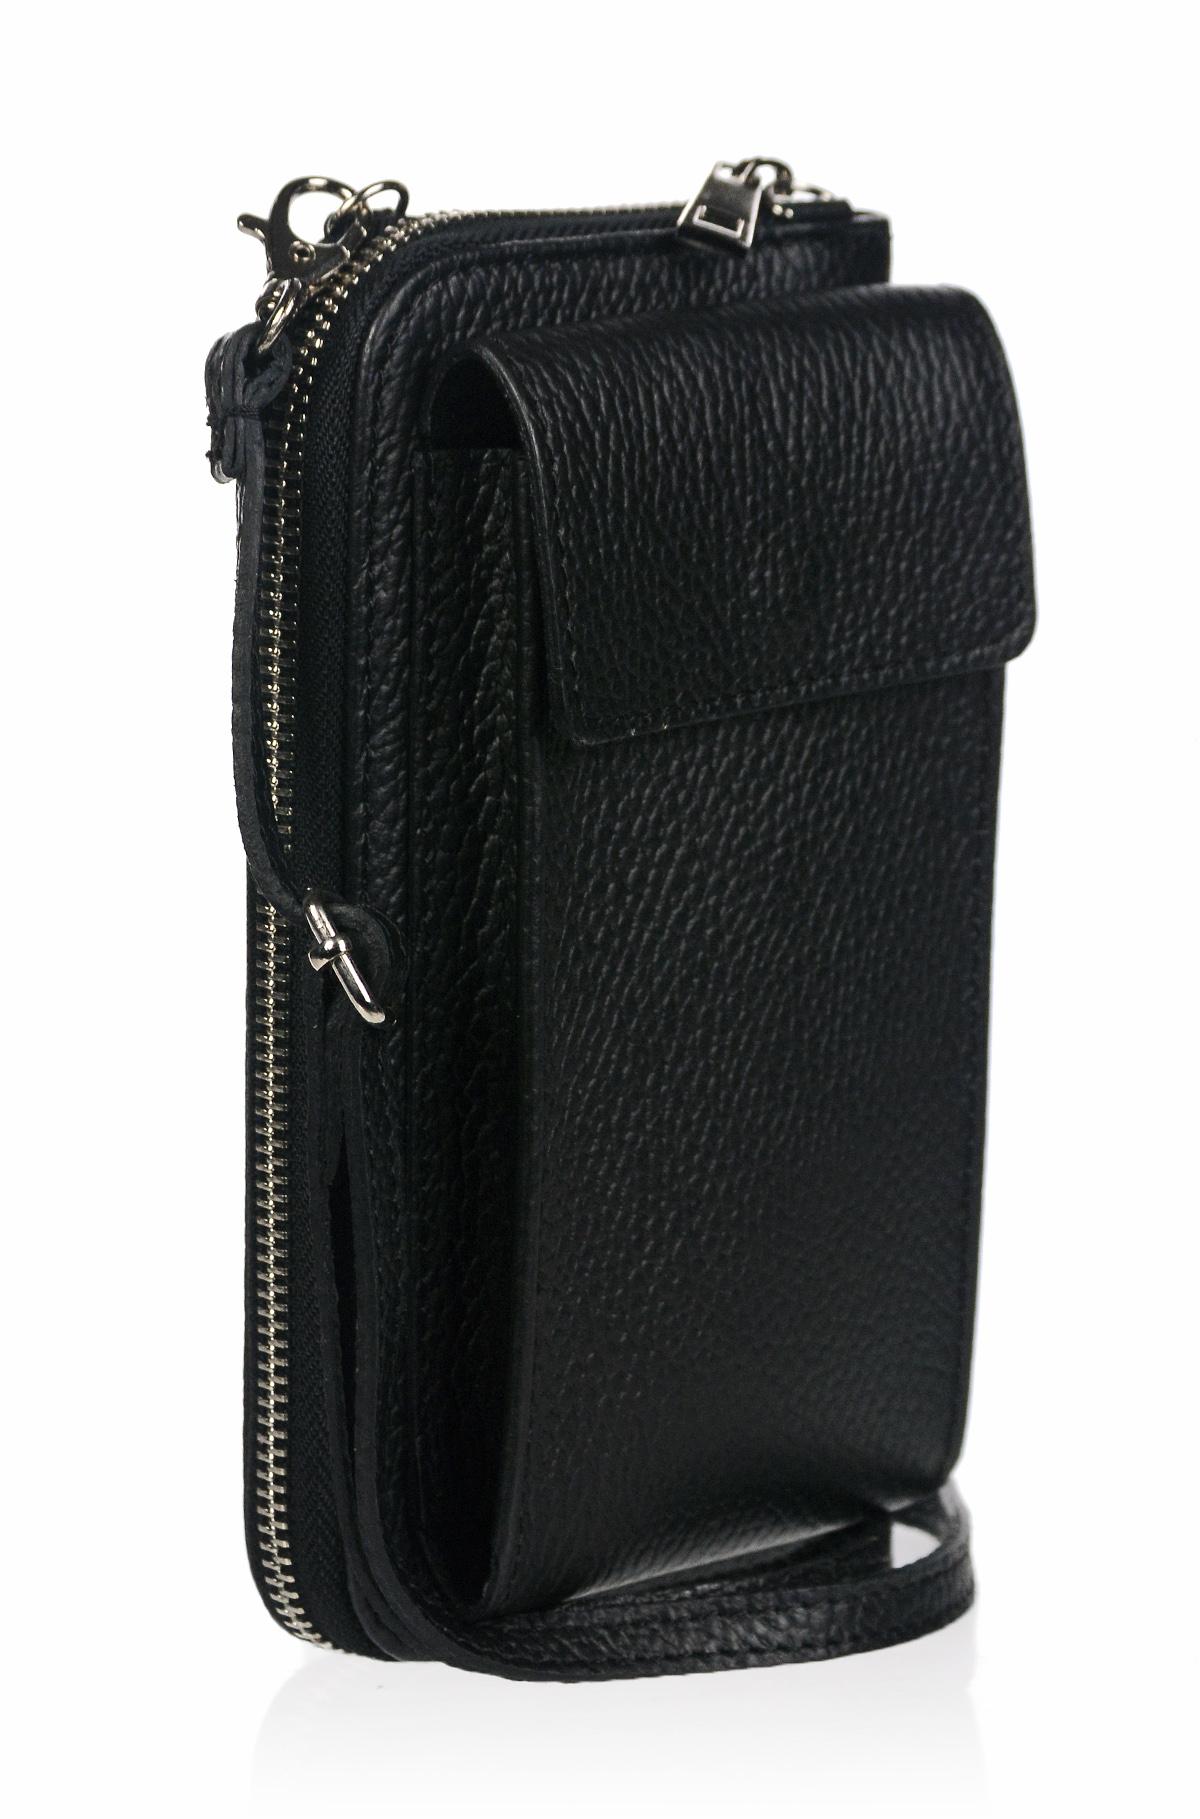 OLIVIA SHOES praktická čierna kožená crossbody peňaženka s vreckom MICHAELA